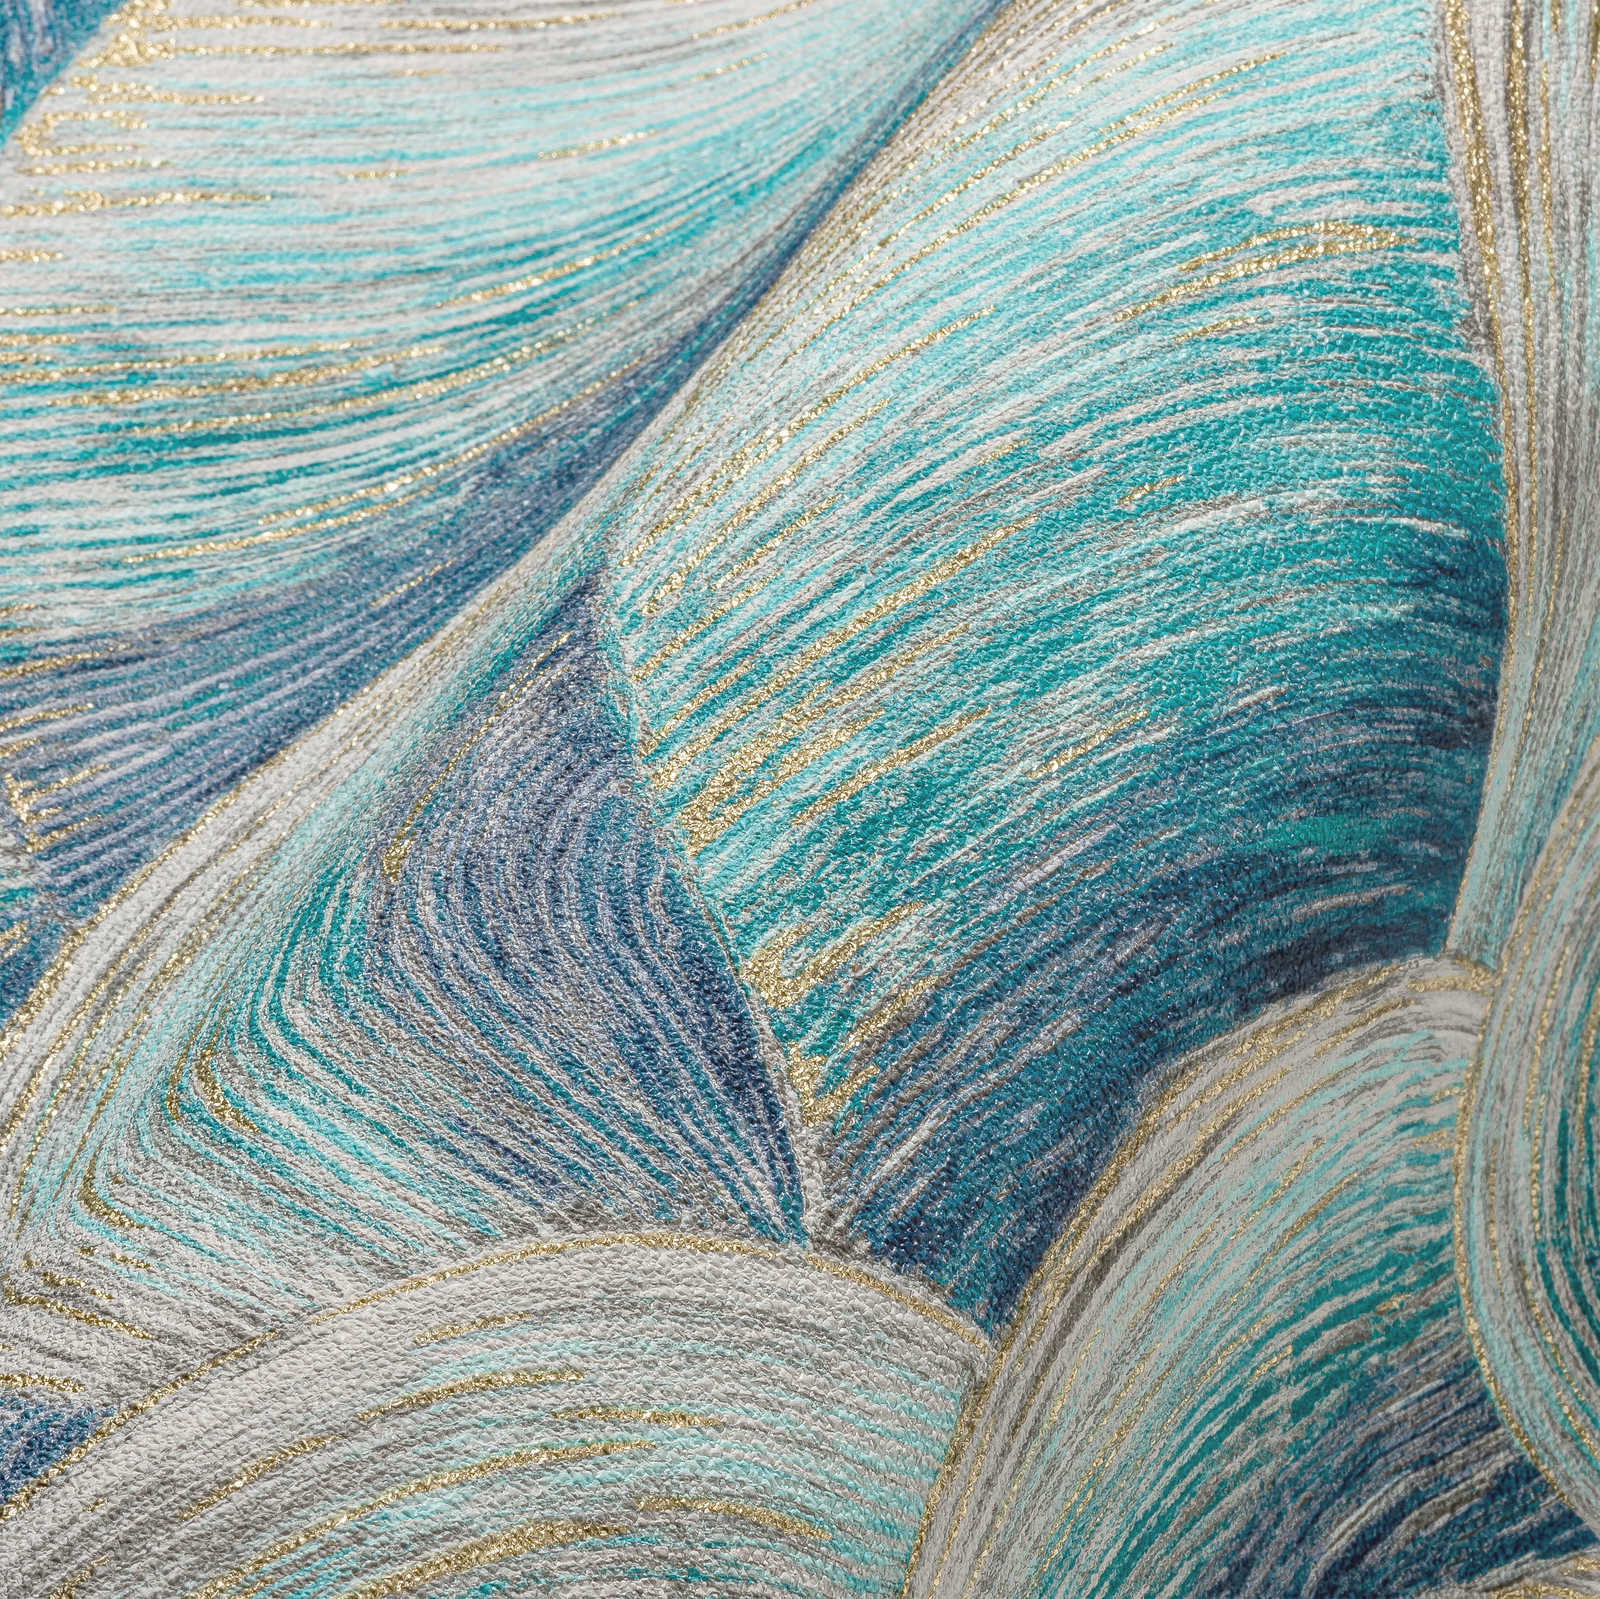             Papier peint abstrait intissé avec motif de vagues & effet brillant - bleu, turquoise, or
        